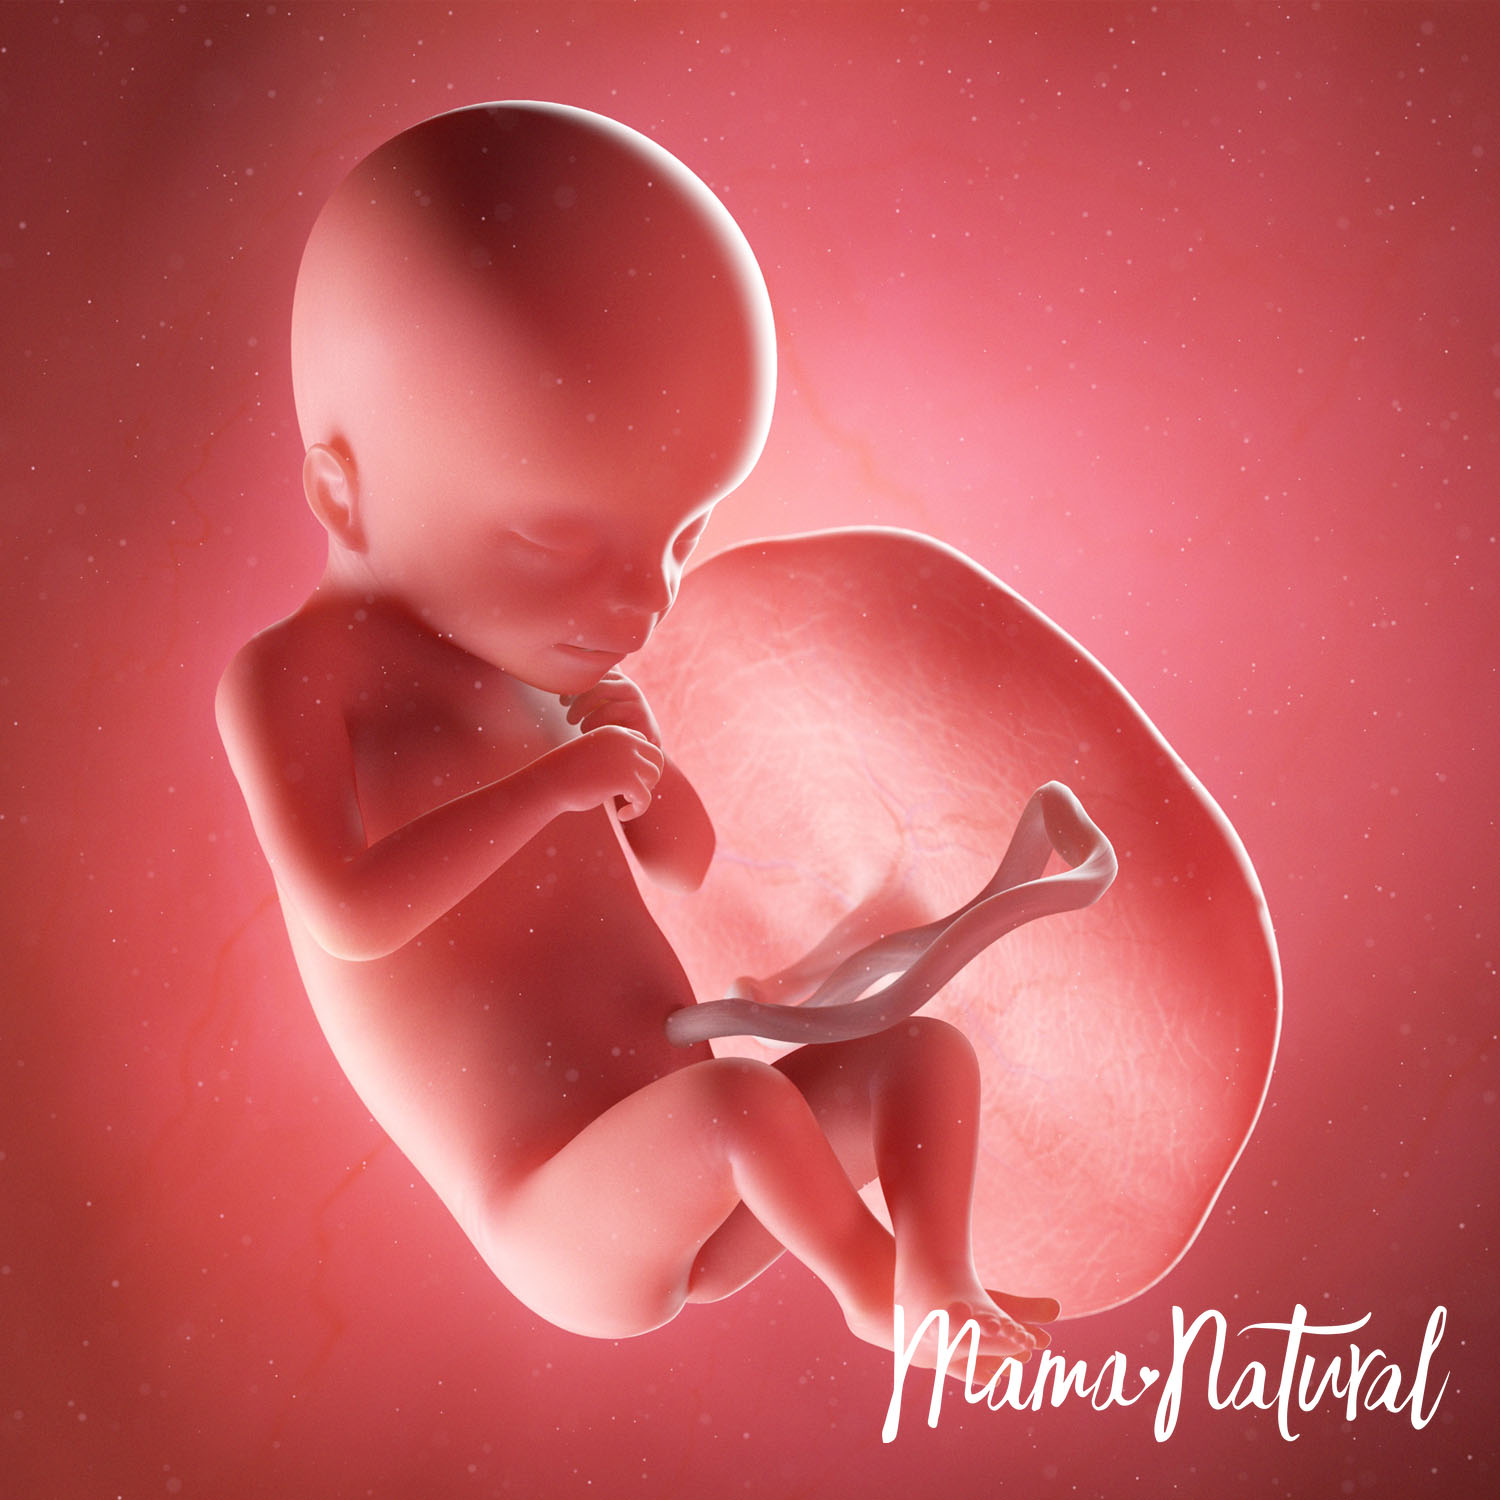 Baby at 18 Weeks Pregnant - Pregnancy Week By Week by Mama Natural